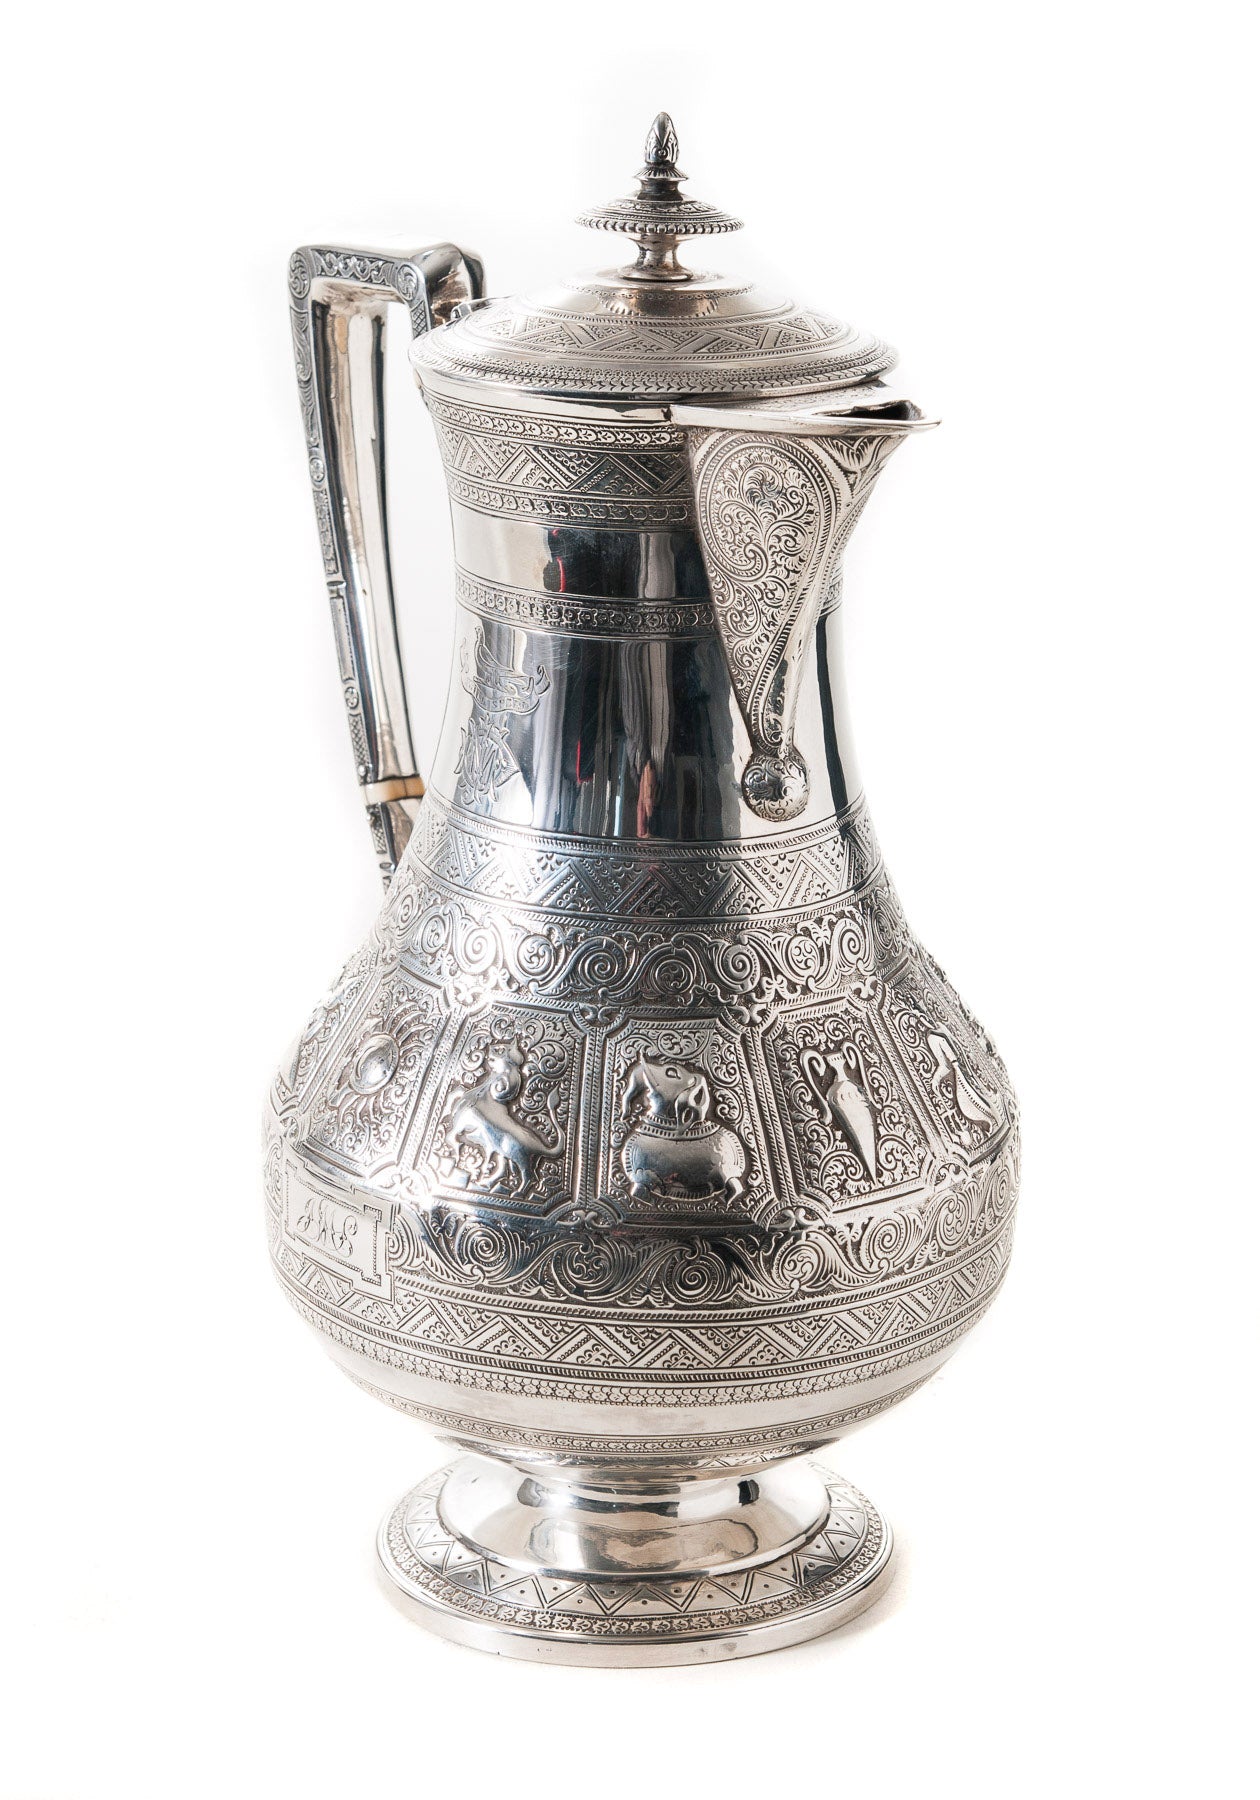 Antique Scottish Silver Zodiac Coffee Pot - Hamilton & Inches Edinburgh 1876 (Code 0529)